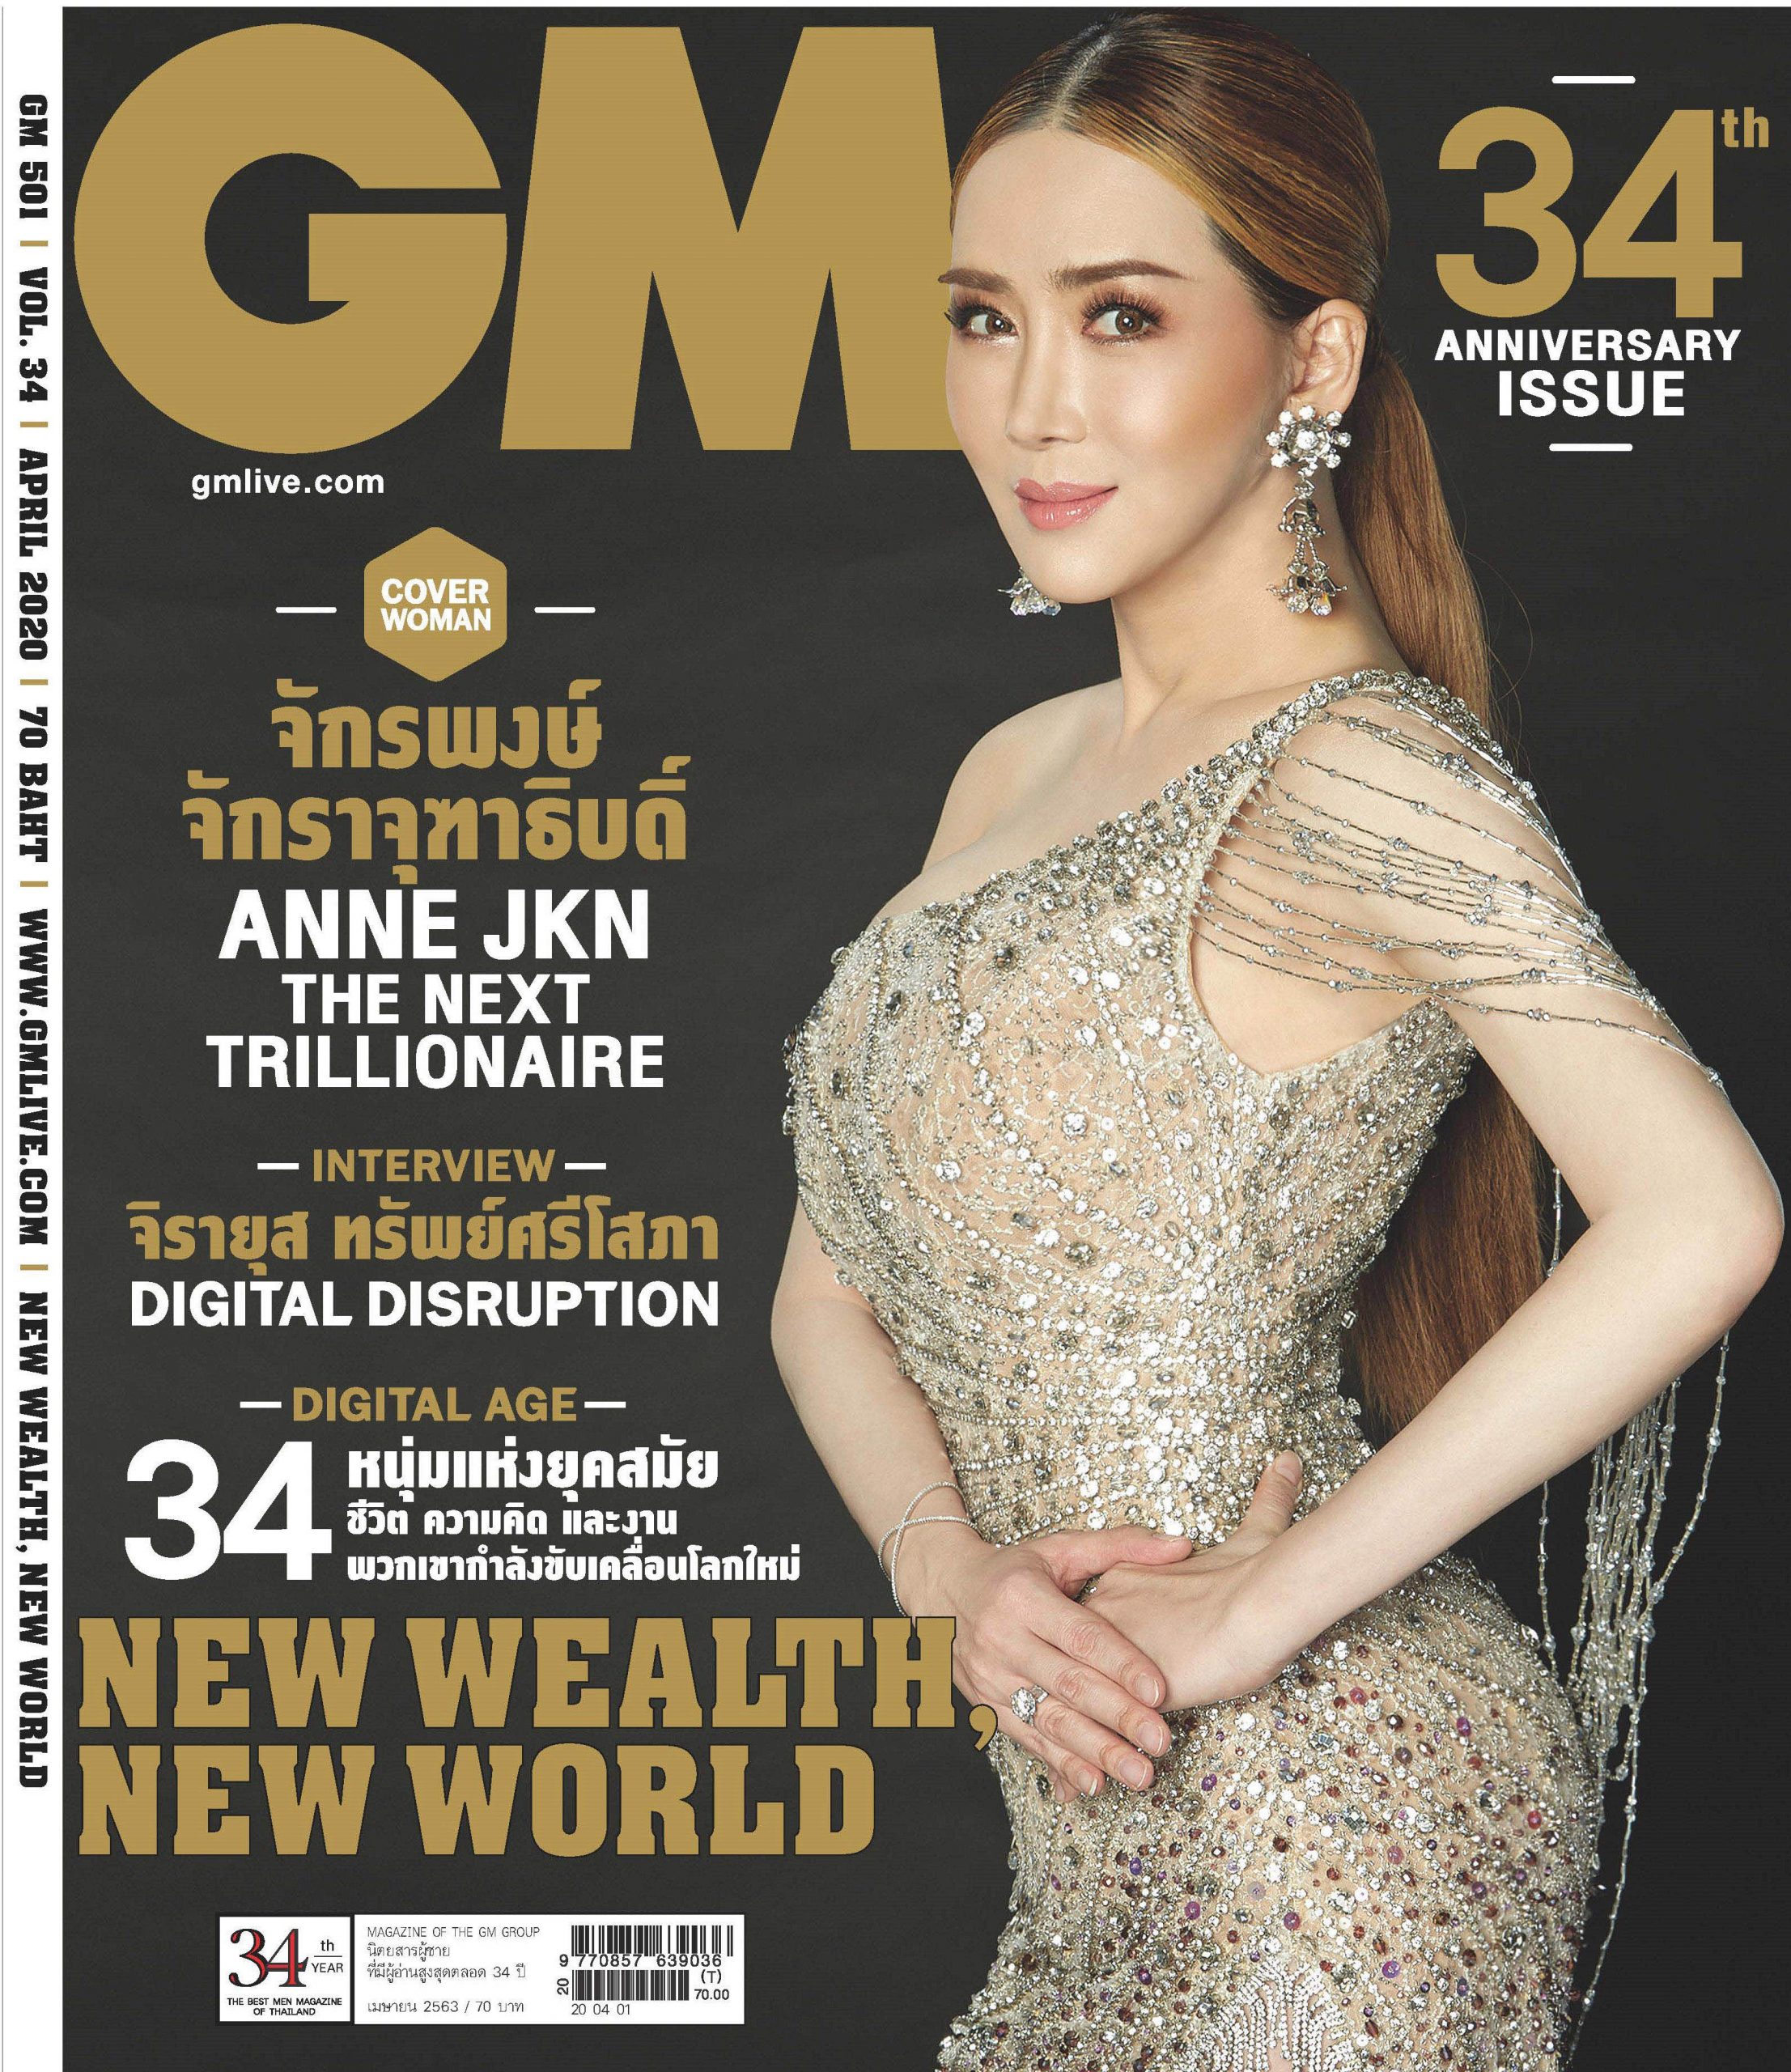 Gossip News: 'แอน-จักรพงษ์ ขึ้นปกครบรอบ 34 ปี นิตยสาร GM สวยสง่า สะกดทุกสายตา ตอกย้ำ 1 ใน 34 นักธุรกิจที่ประสบความสำเร็จในรอบทศวรรษ